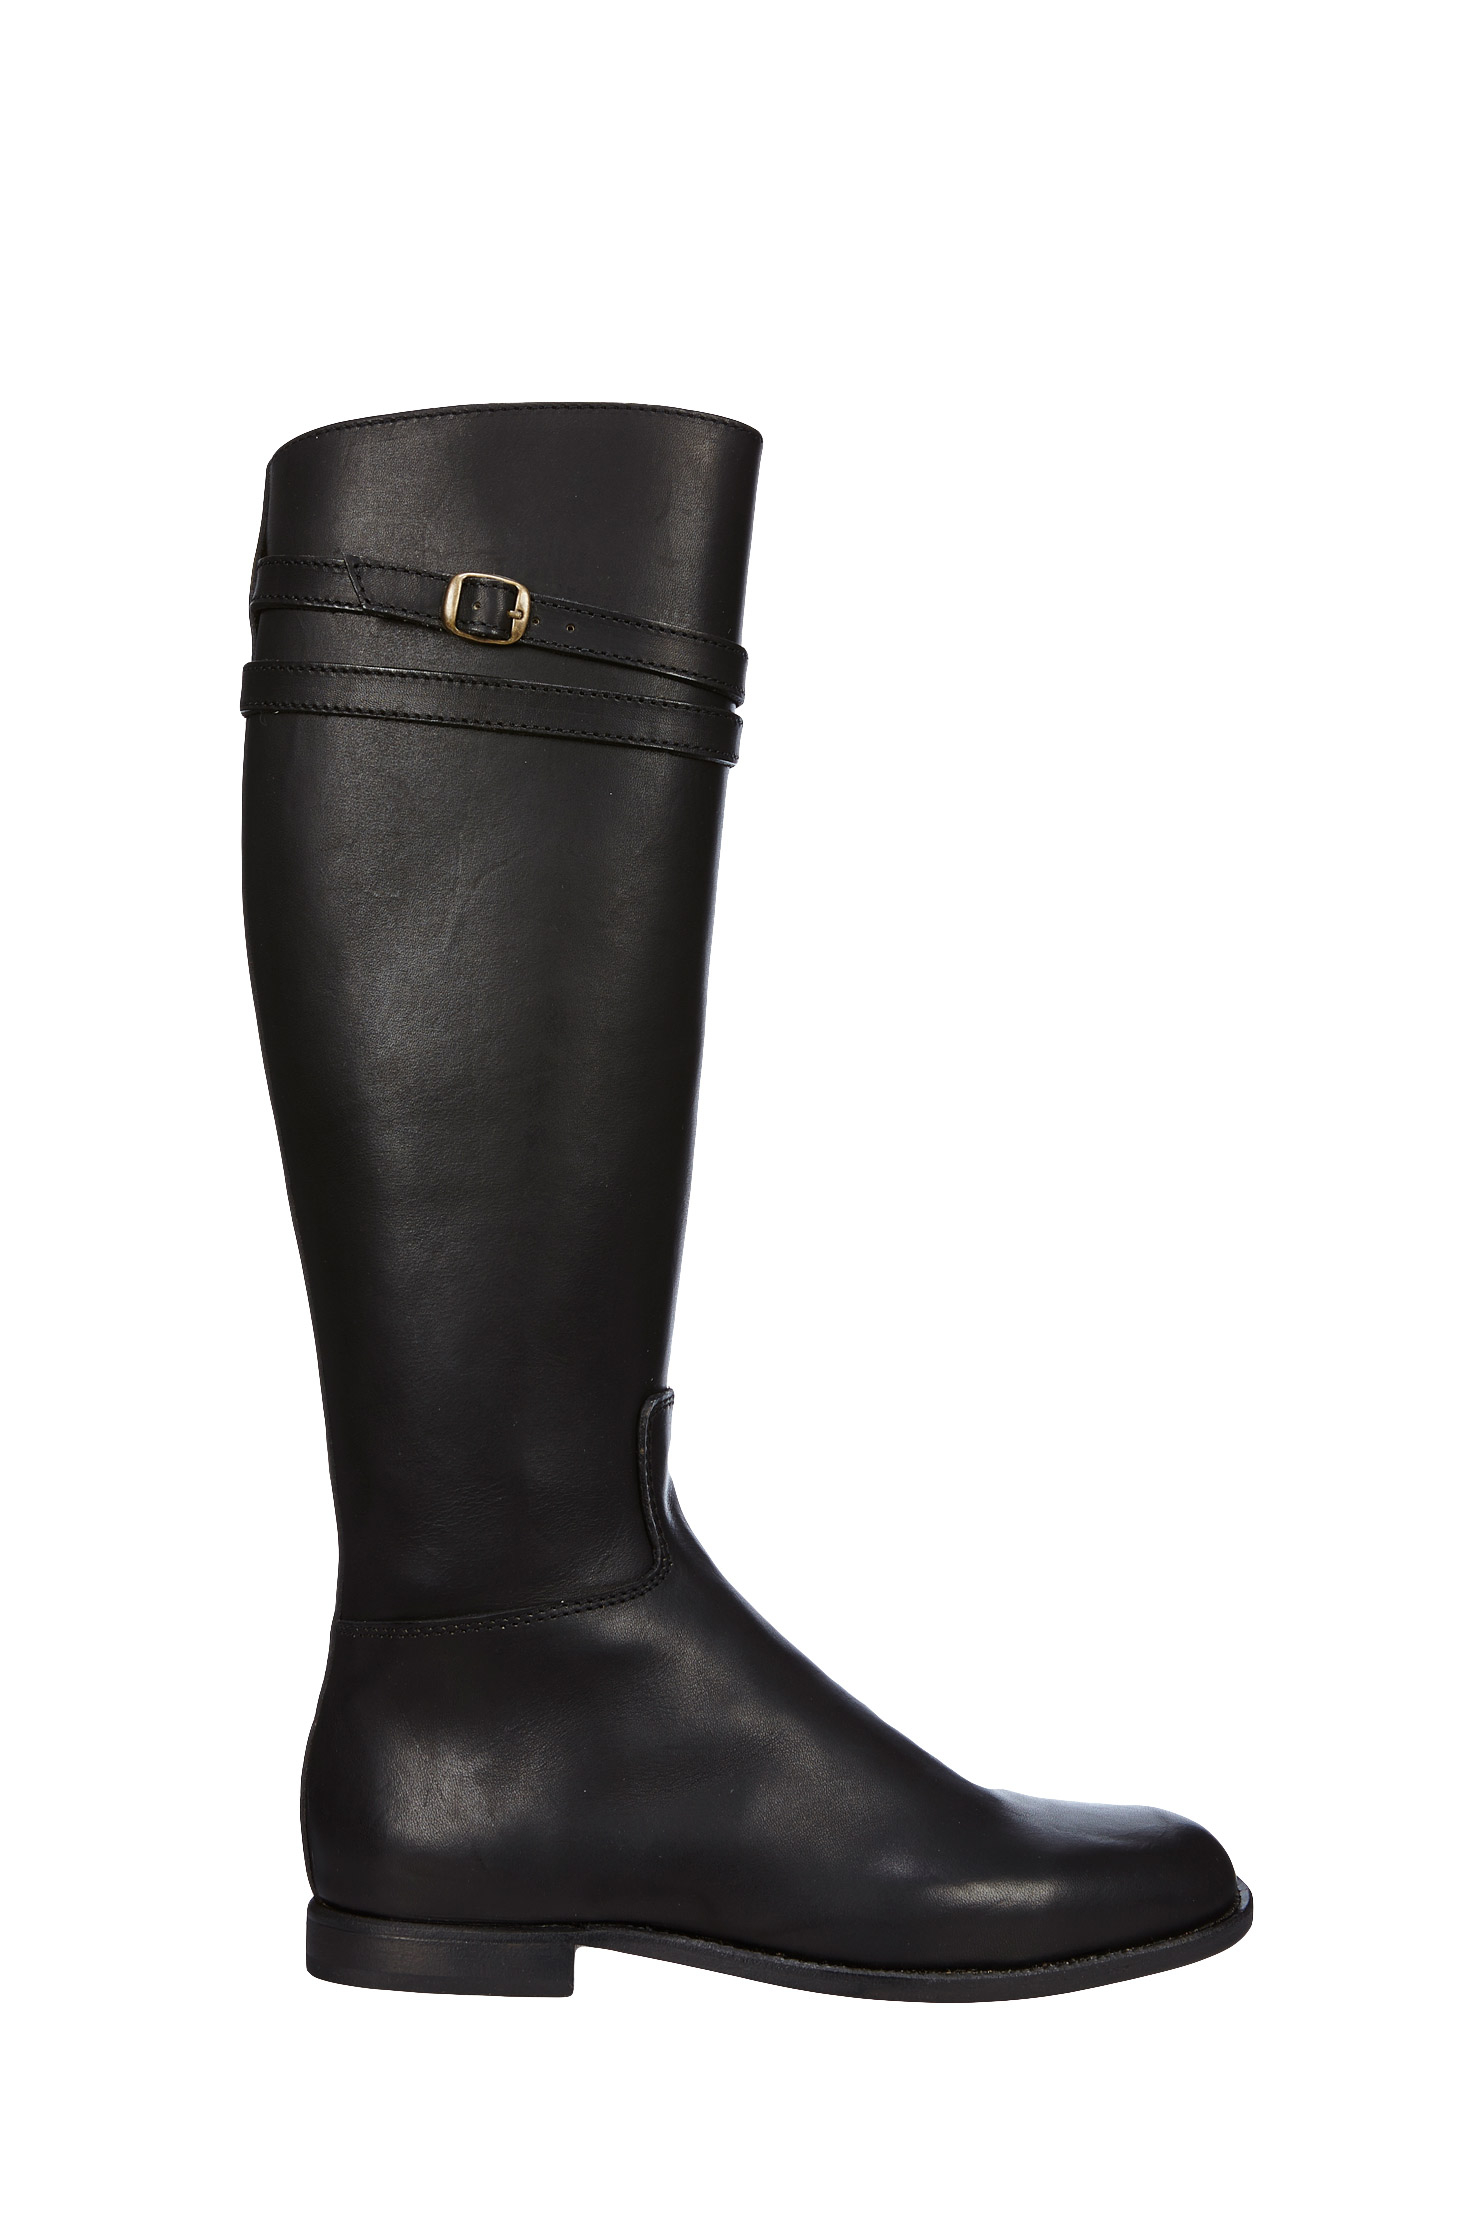 La Botte Gardiane Boots - Fabiola in Black | Lyst